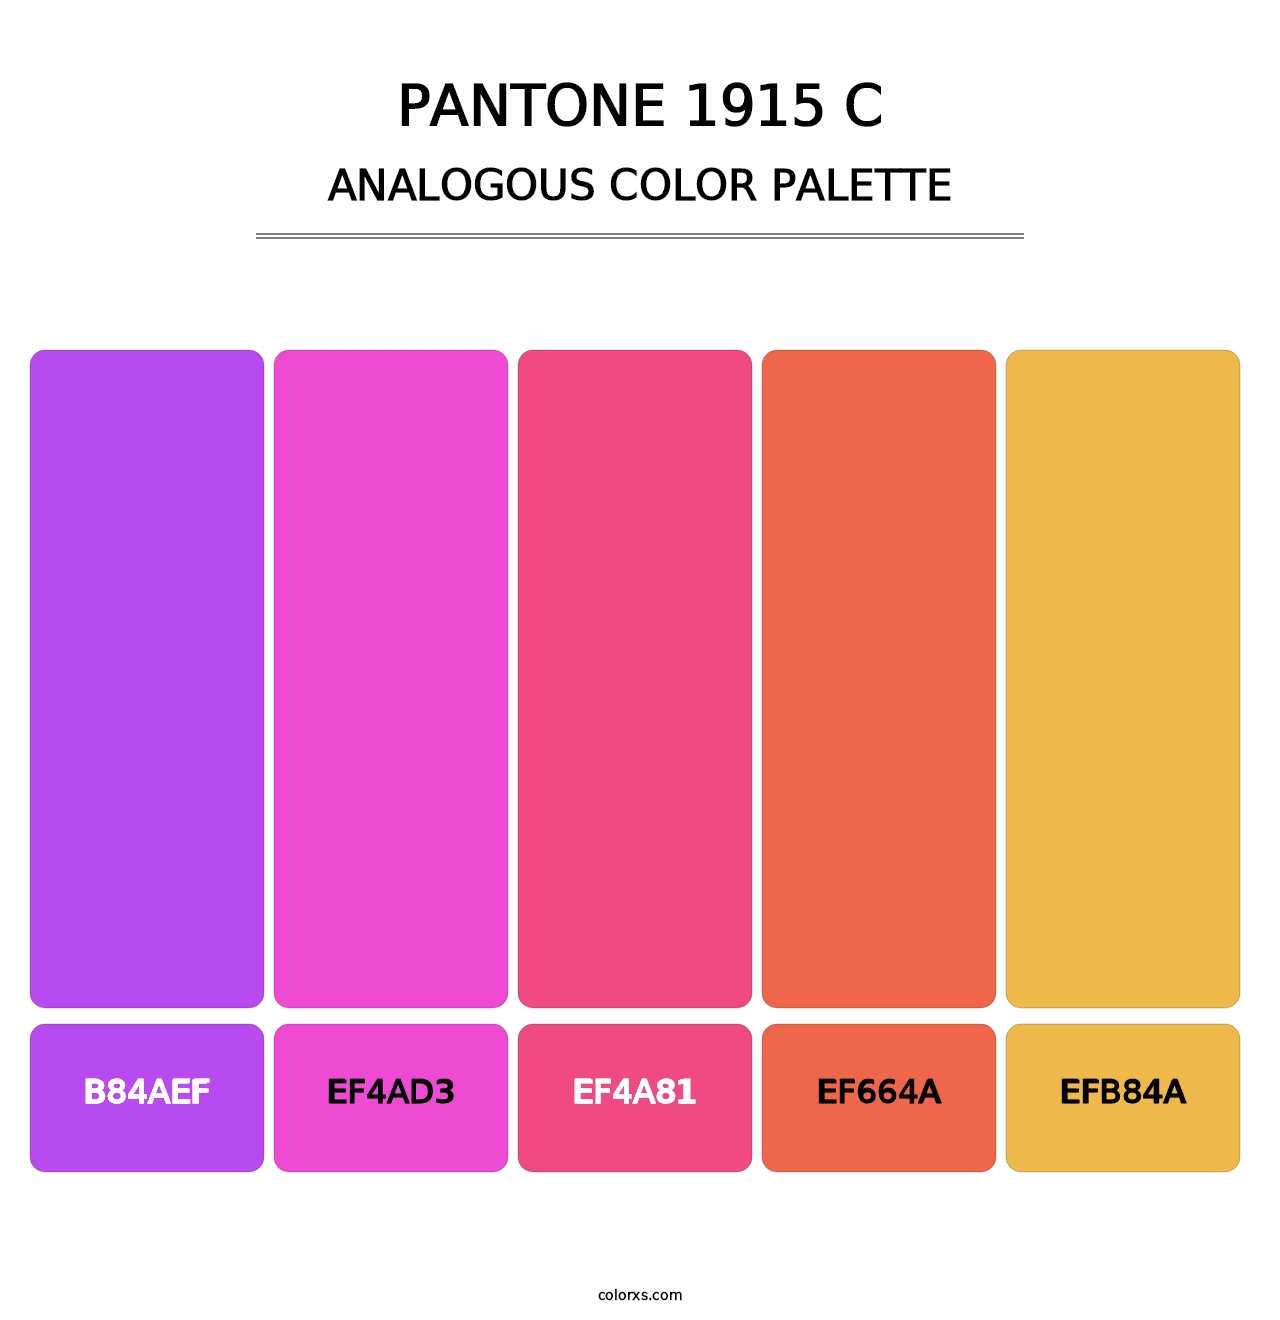 PANTONE 1915 C - Analogous Color Palette